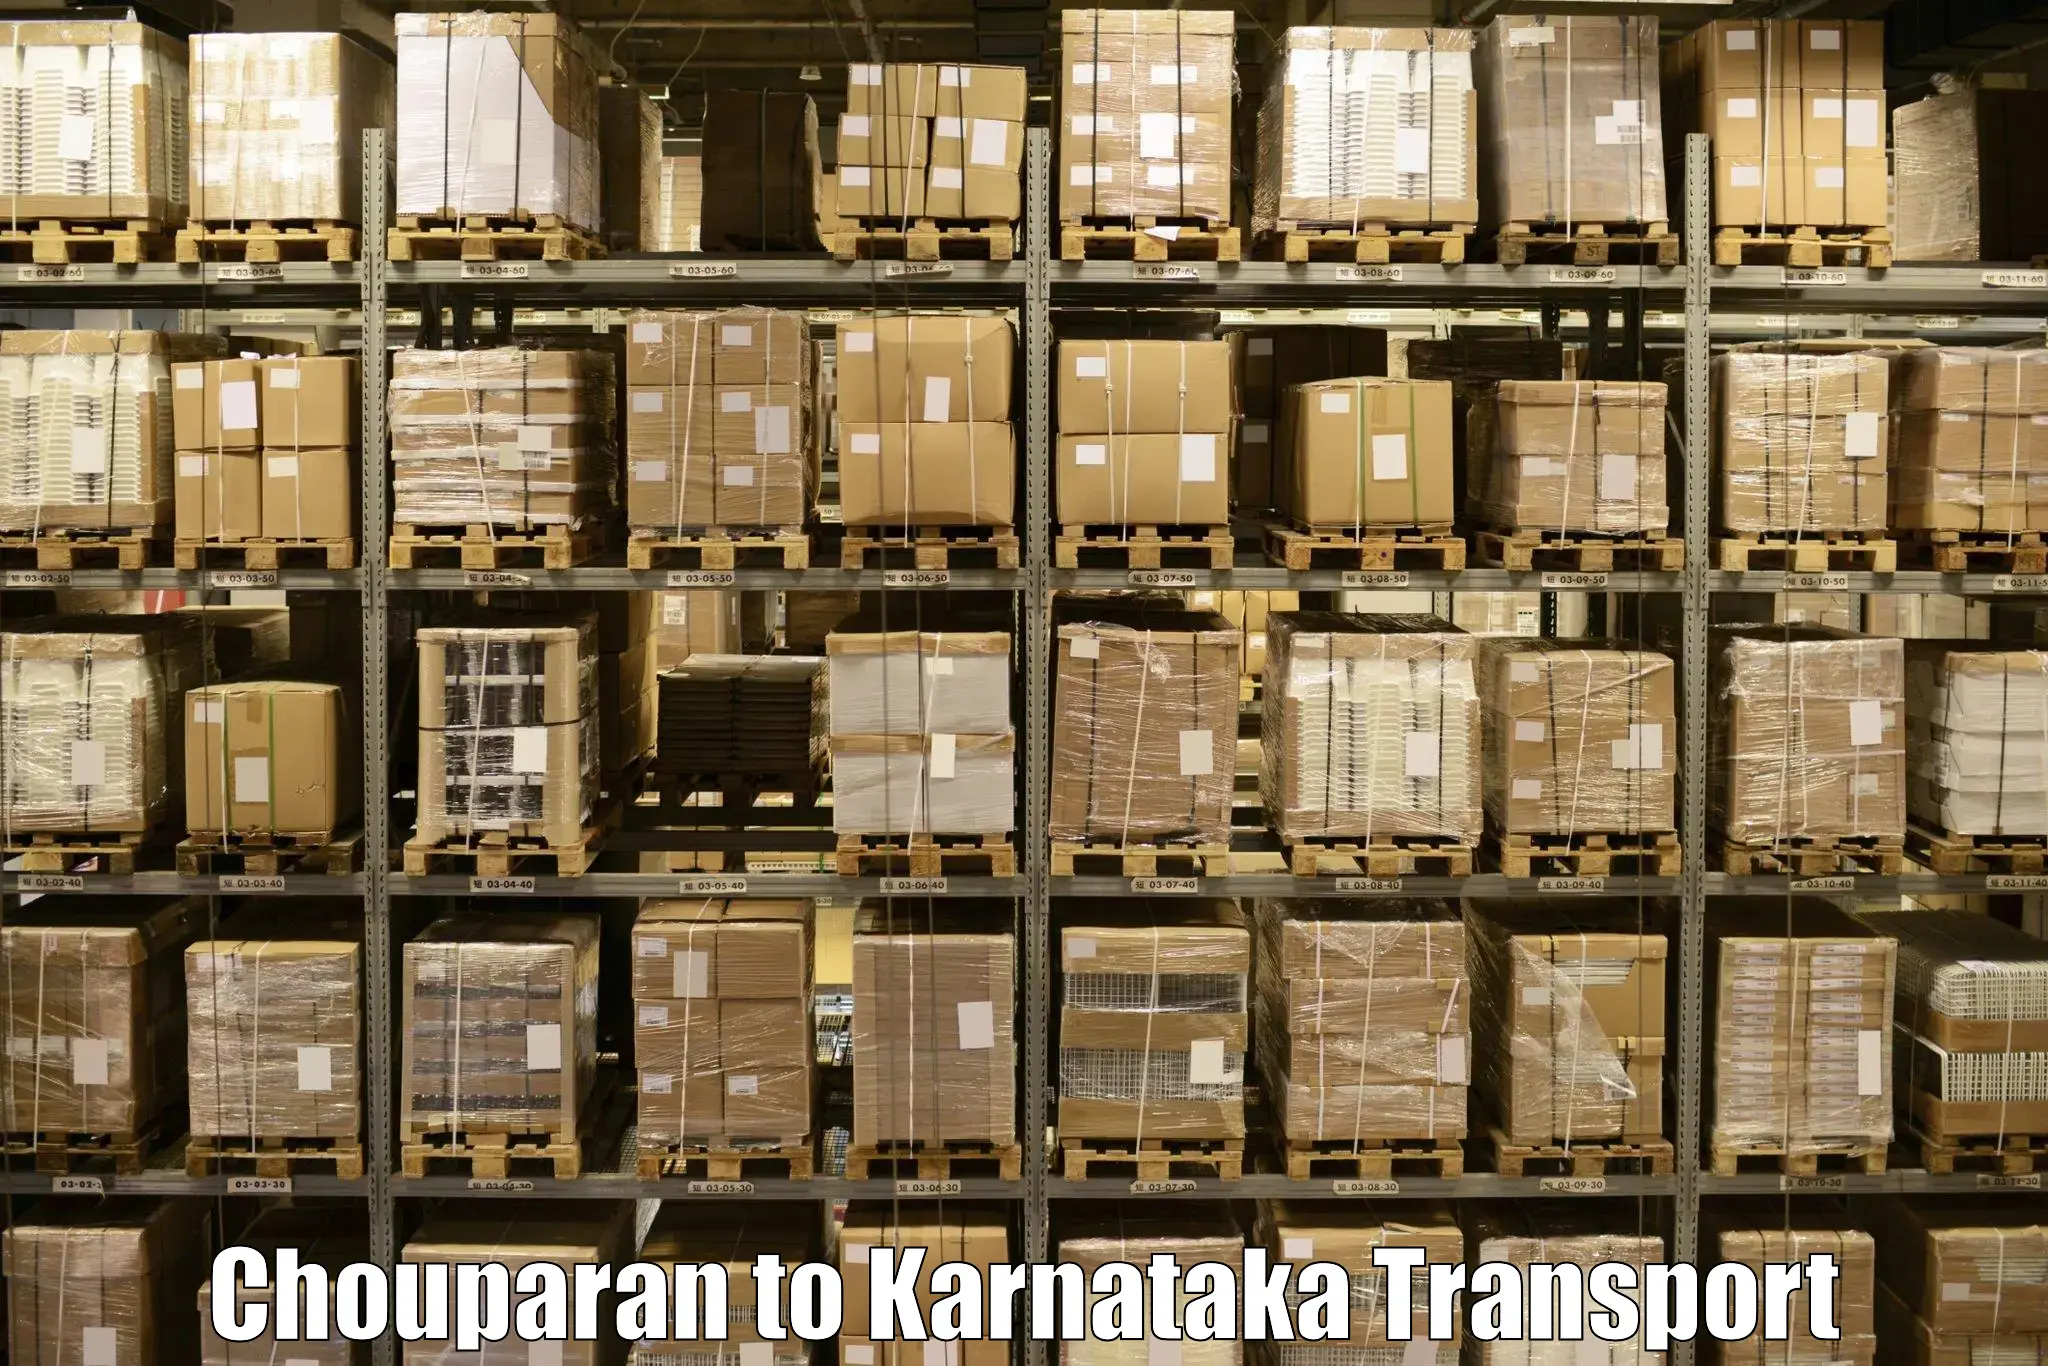 Land transport services Chouparan to Karnataka